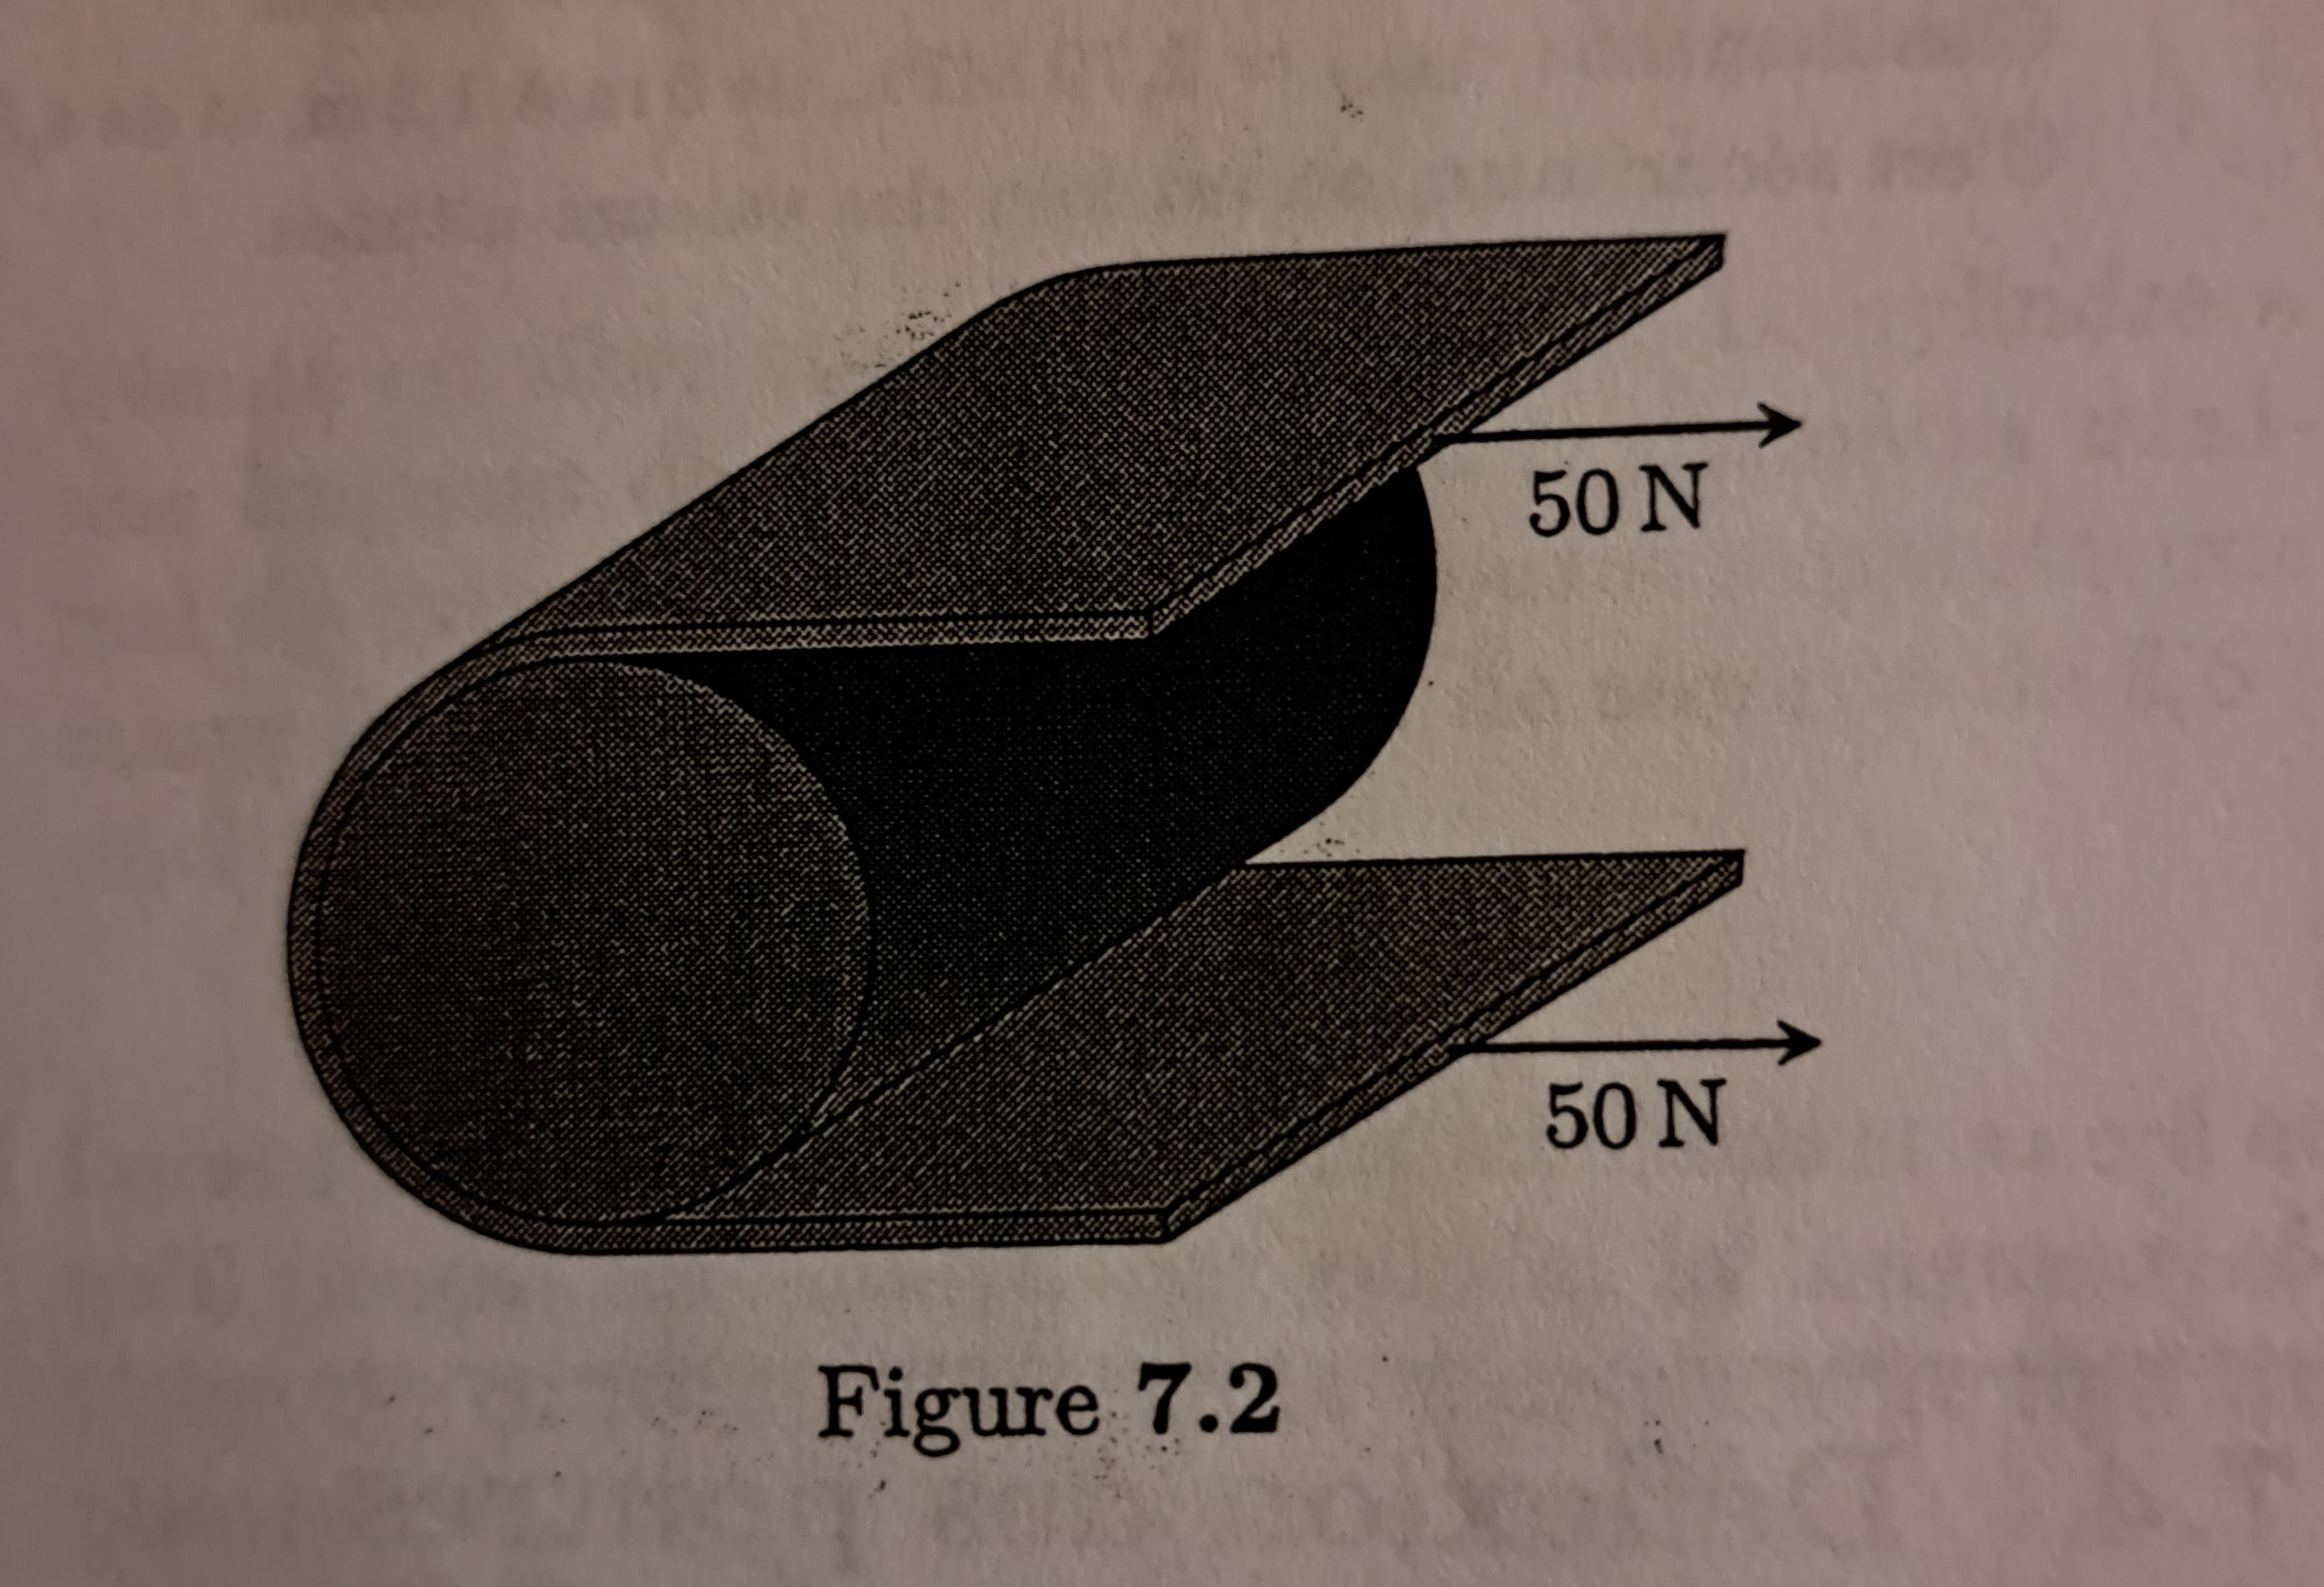 Figure 7.2
50 N
50 N